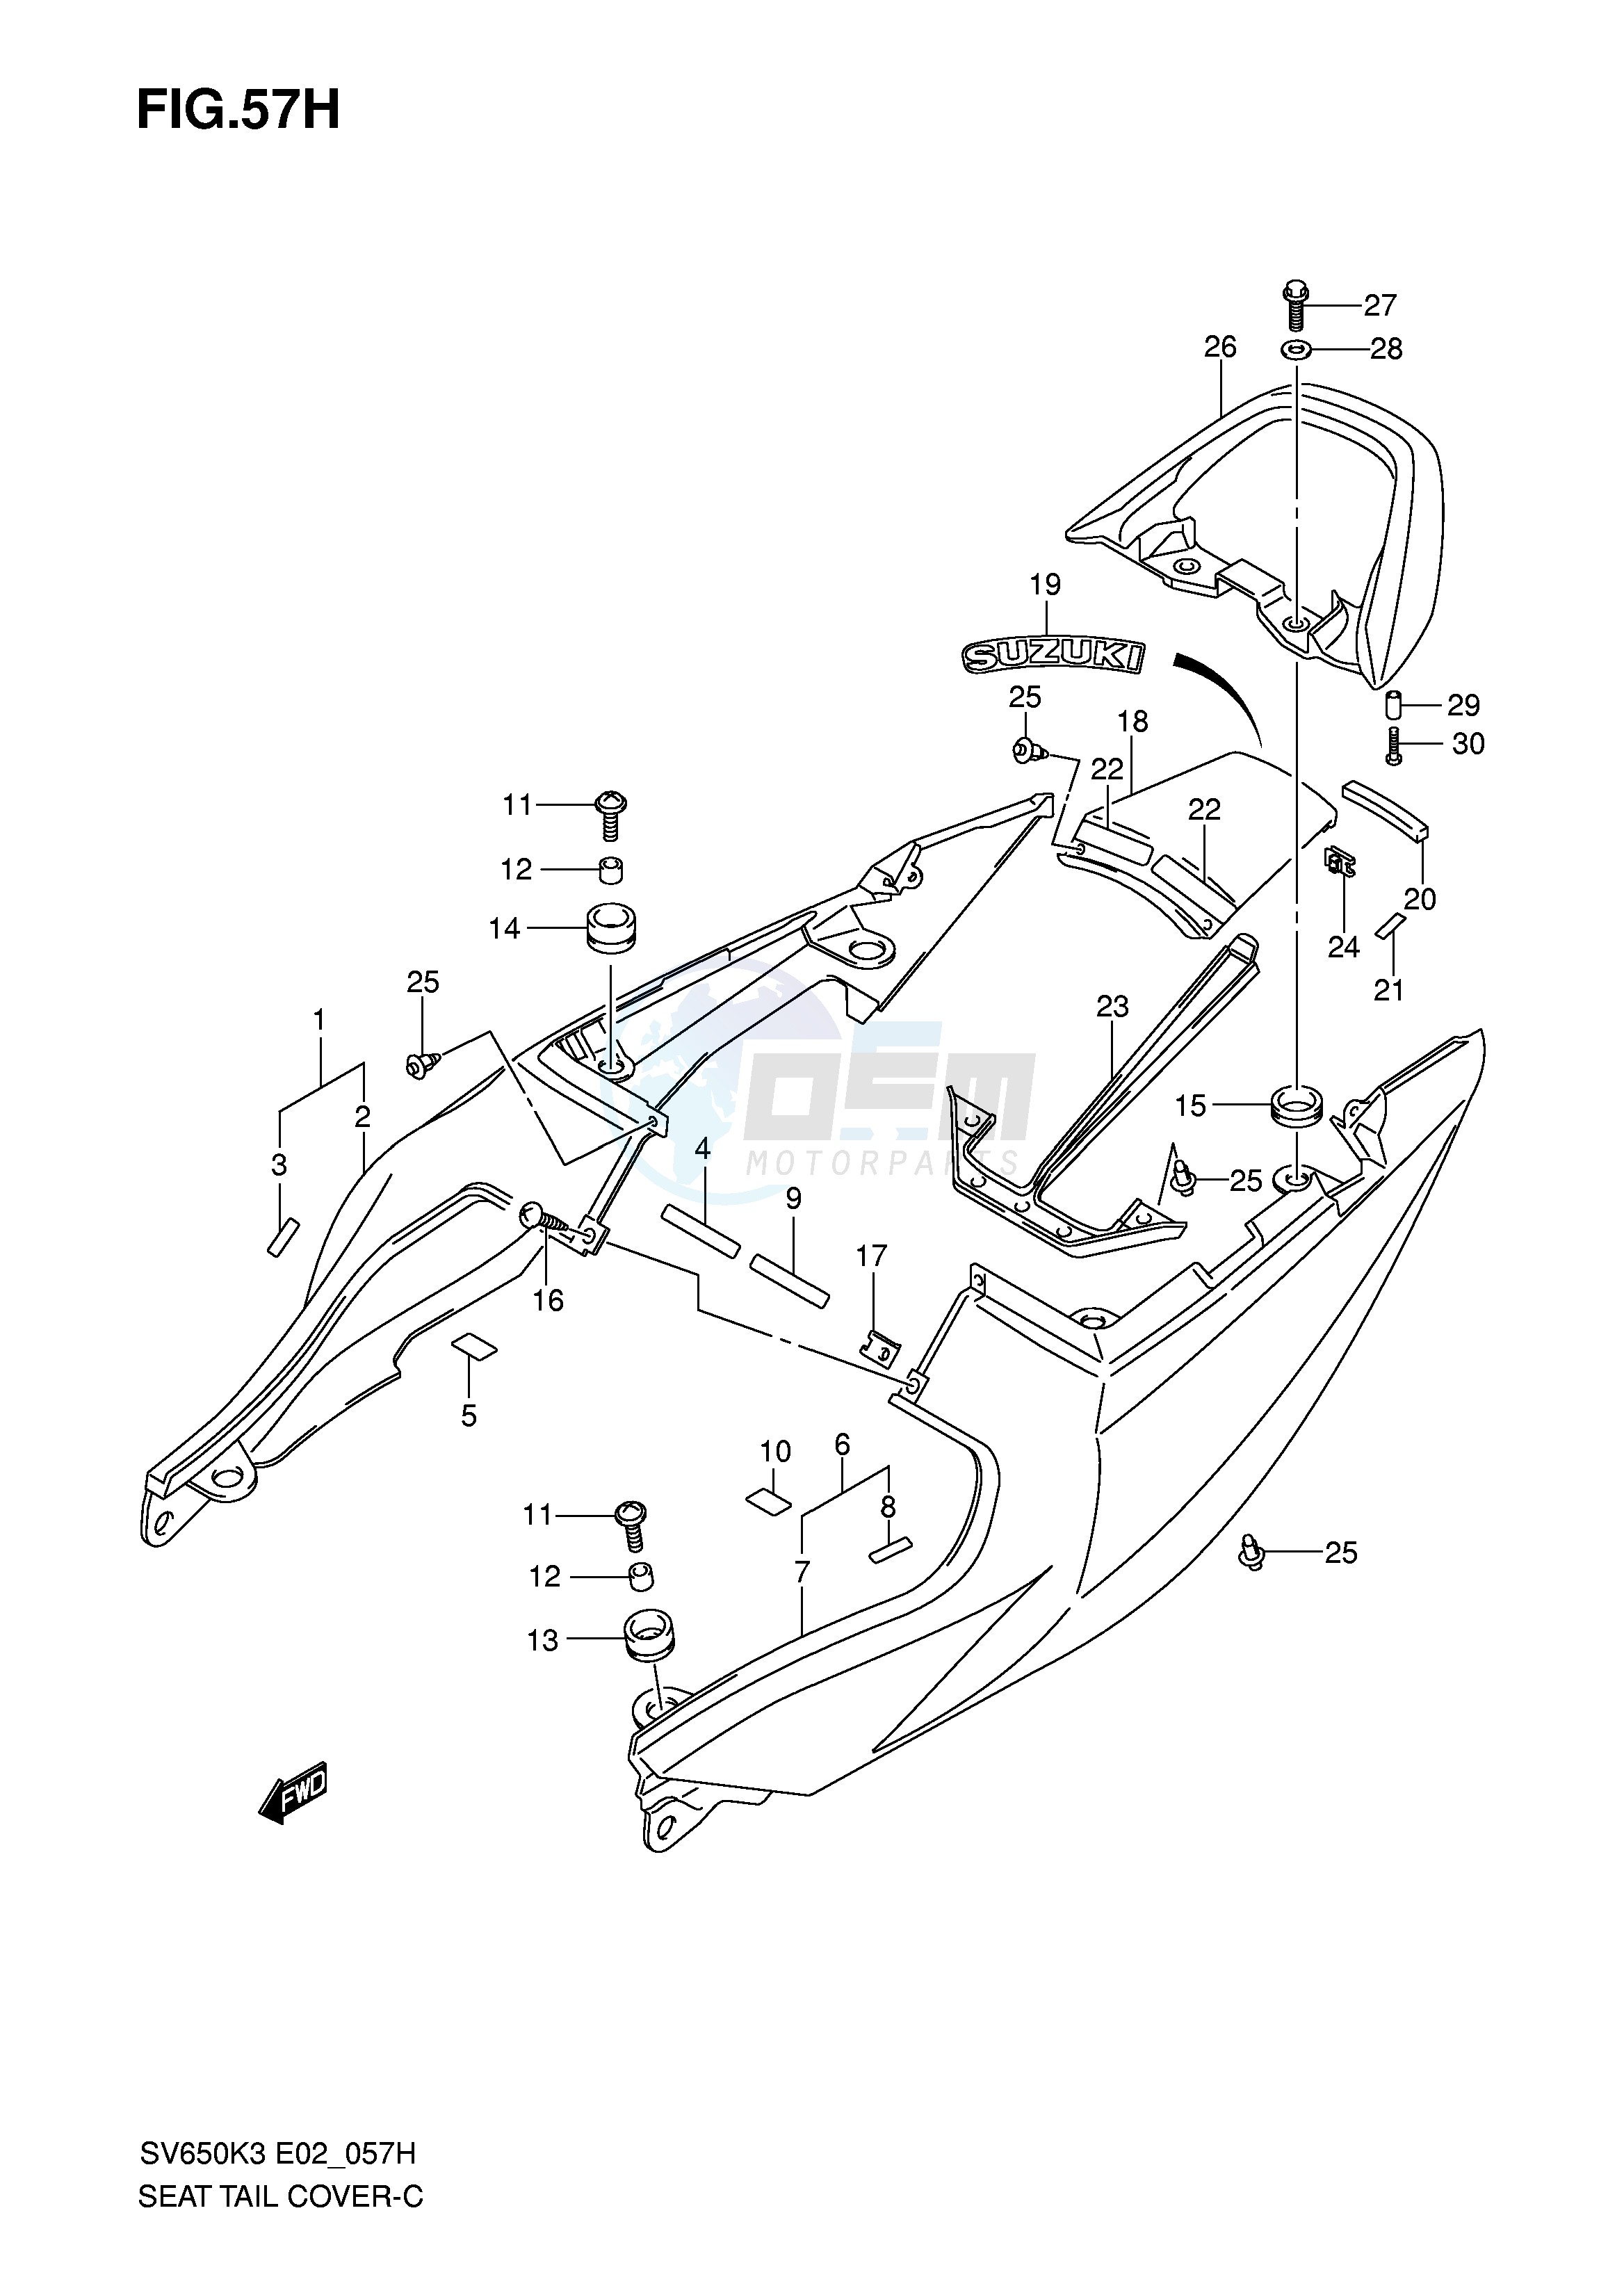 SEAT TAIL COVER (SV650SK7 SUK7 SAK7 SUAK7) blueprint